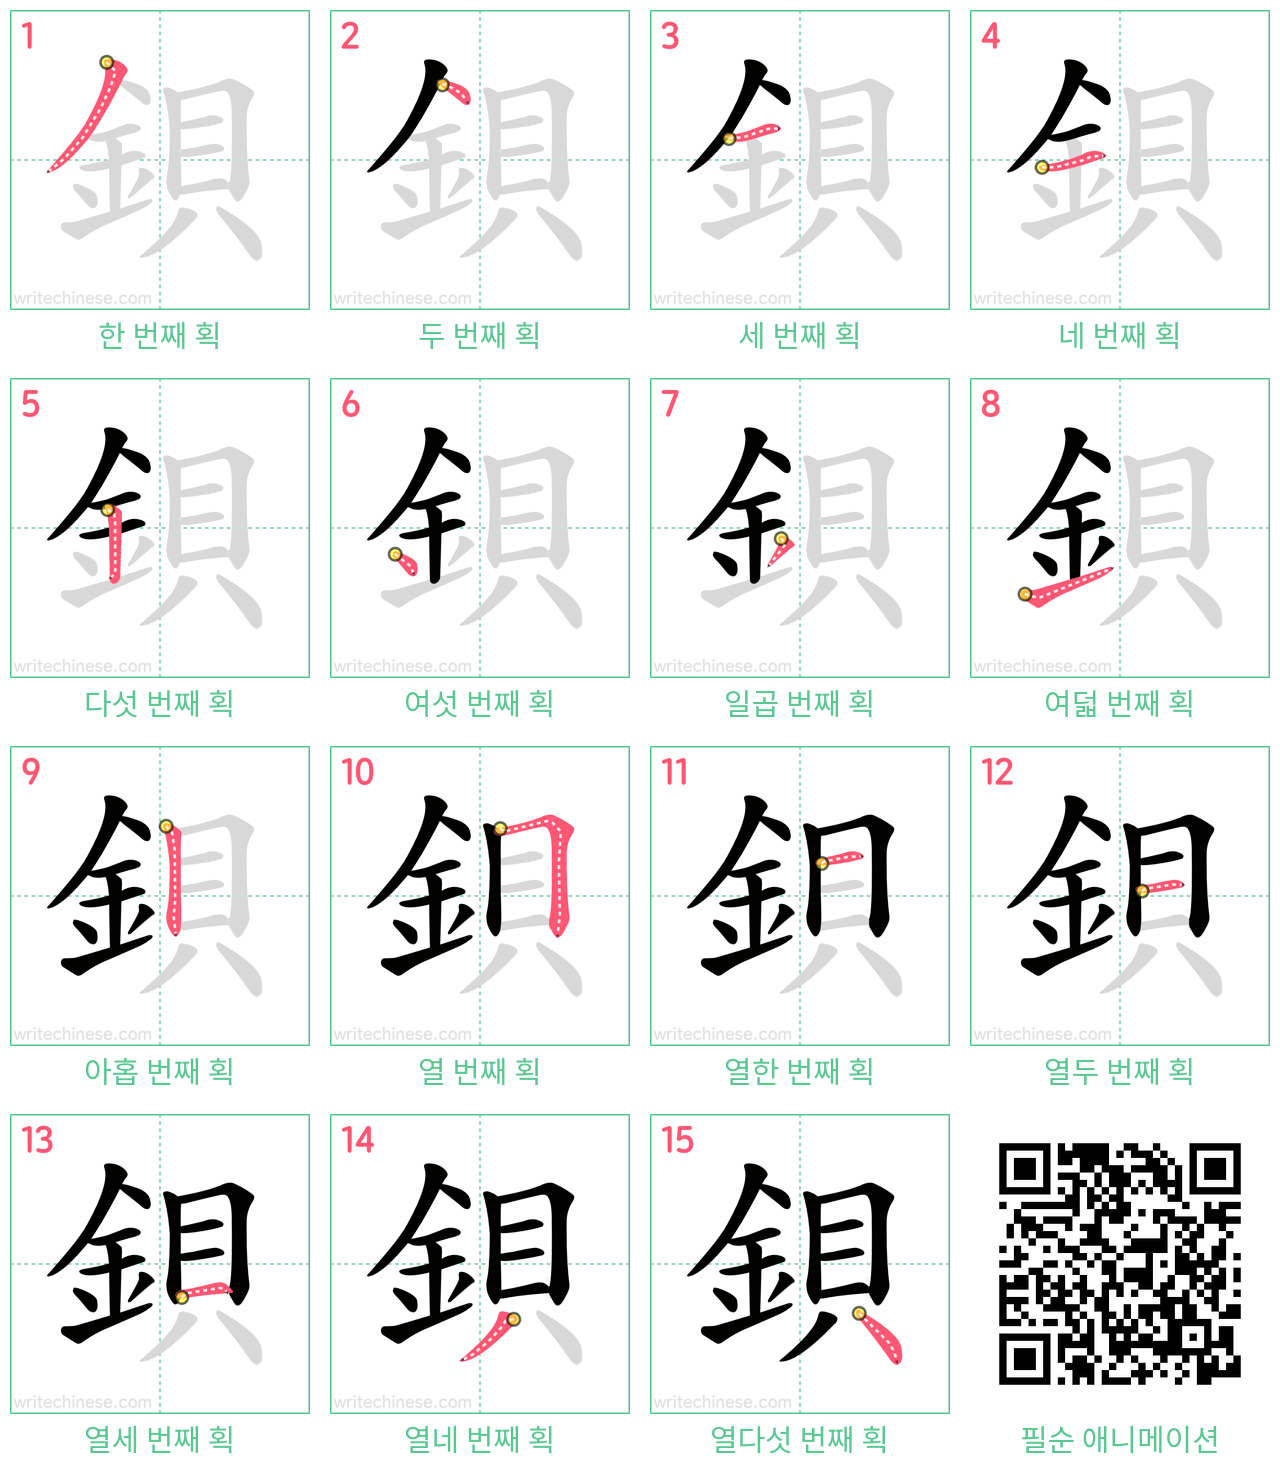 鋇 step-by-step stroke order diagrams